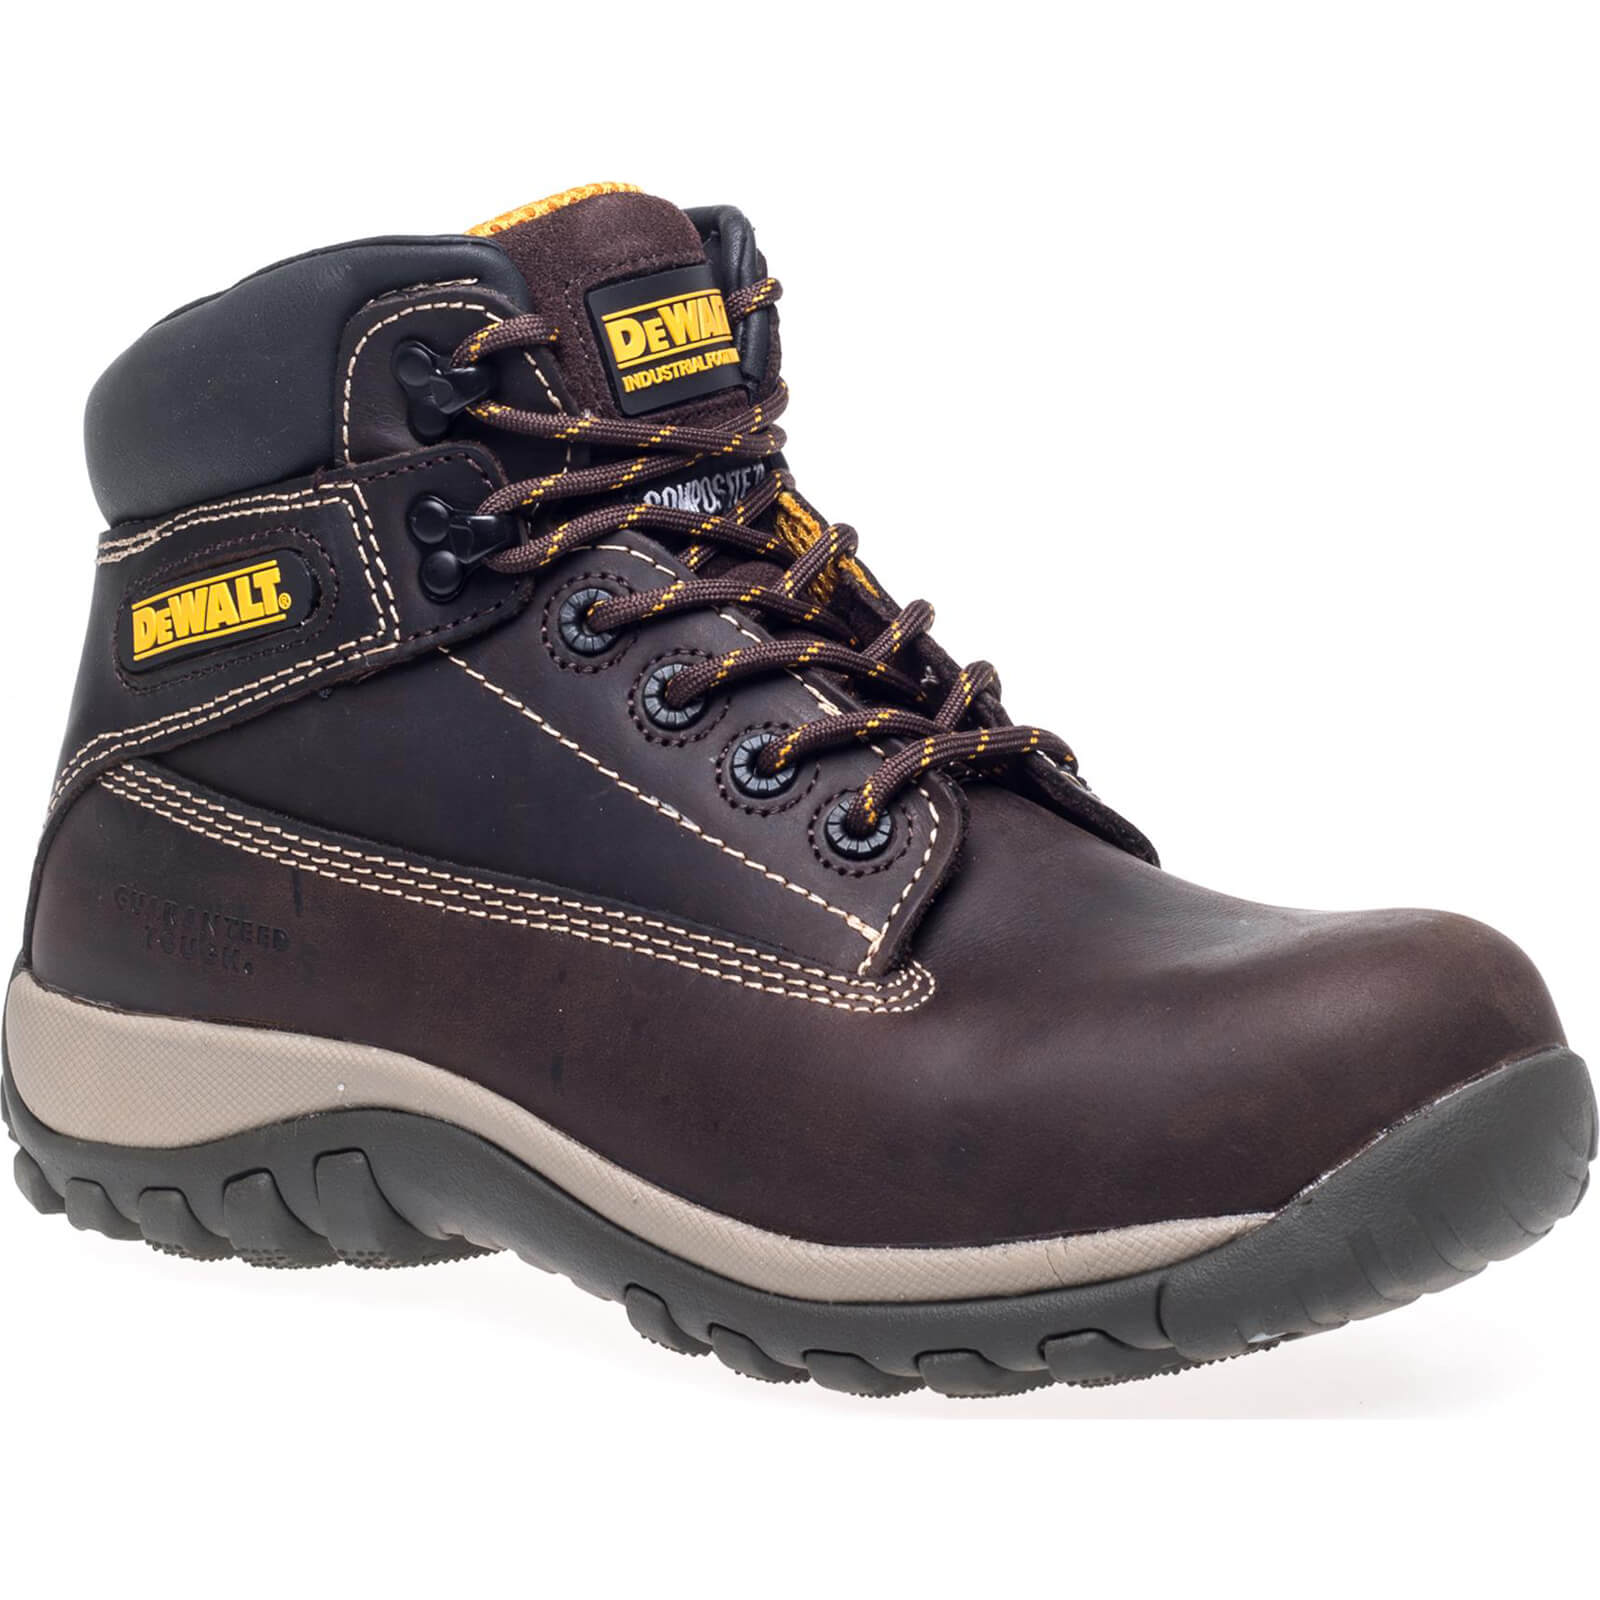 Photo of Dewalt Hammer Non Metallic Safety Boots Brown Size 7